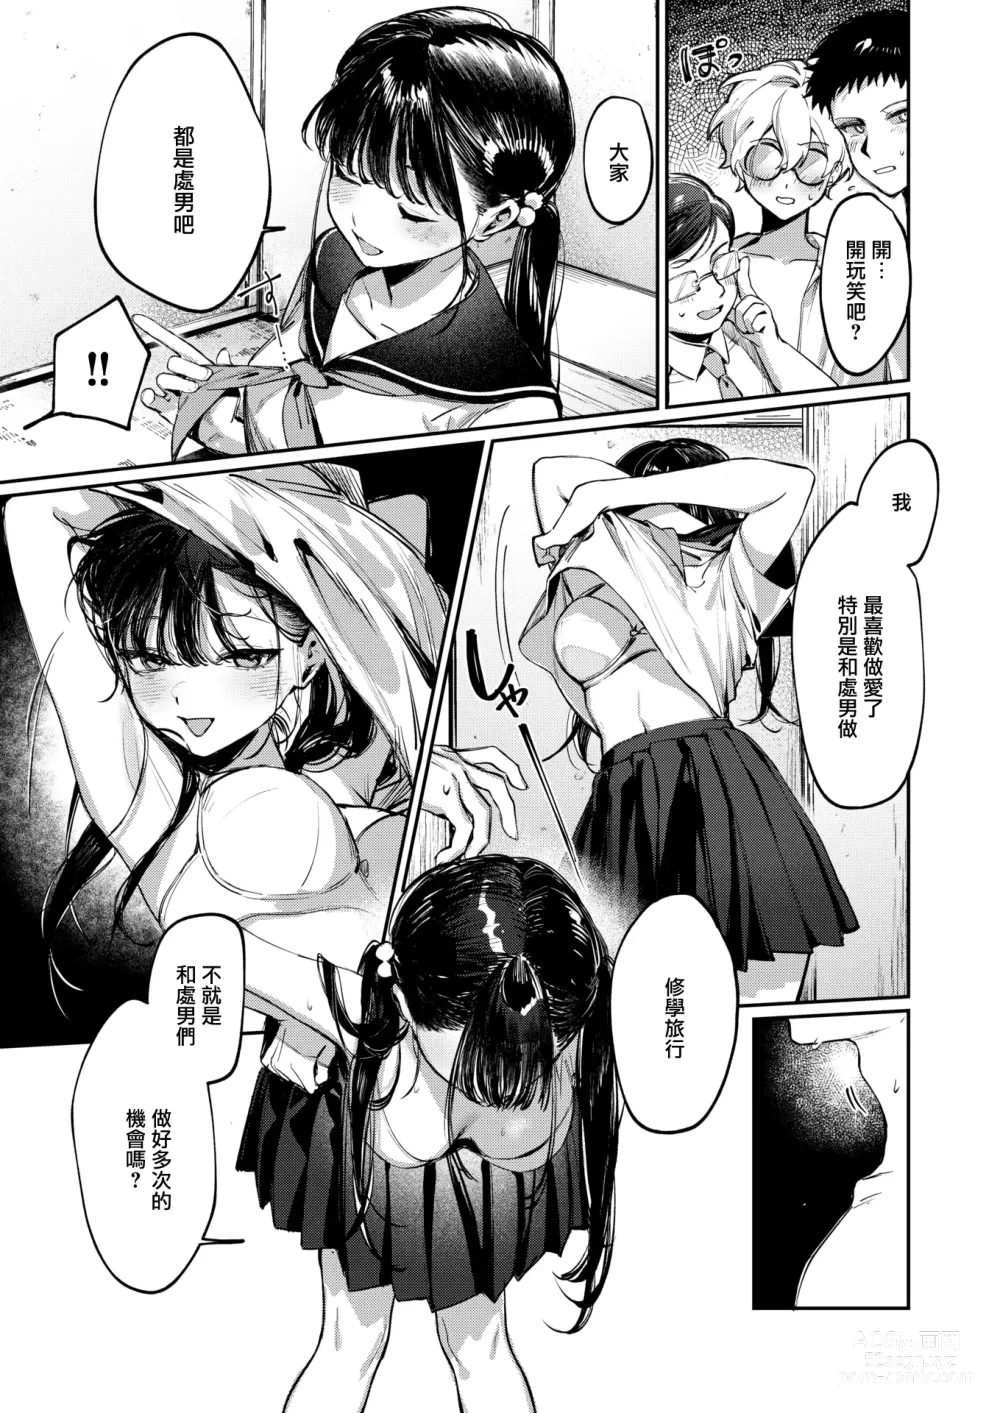 Page 8 of manga Doutei Reaper Sotsugyou Ryokou